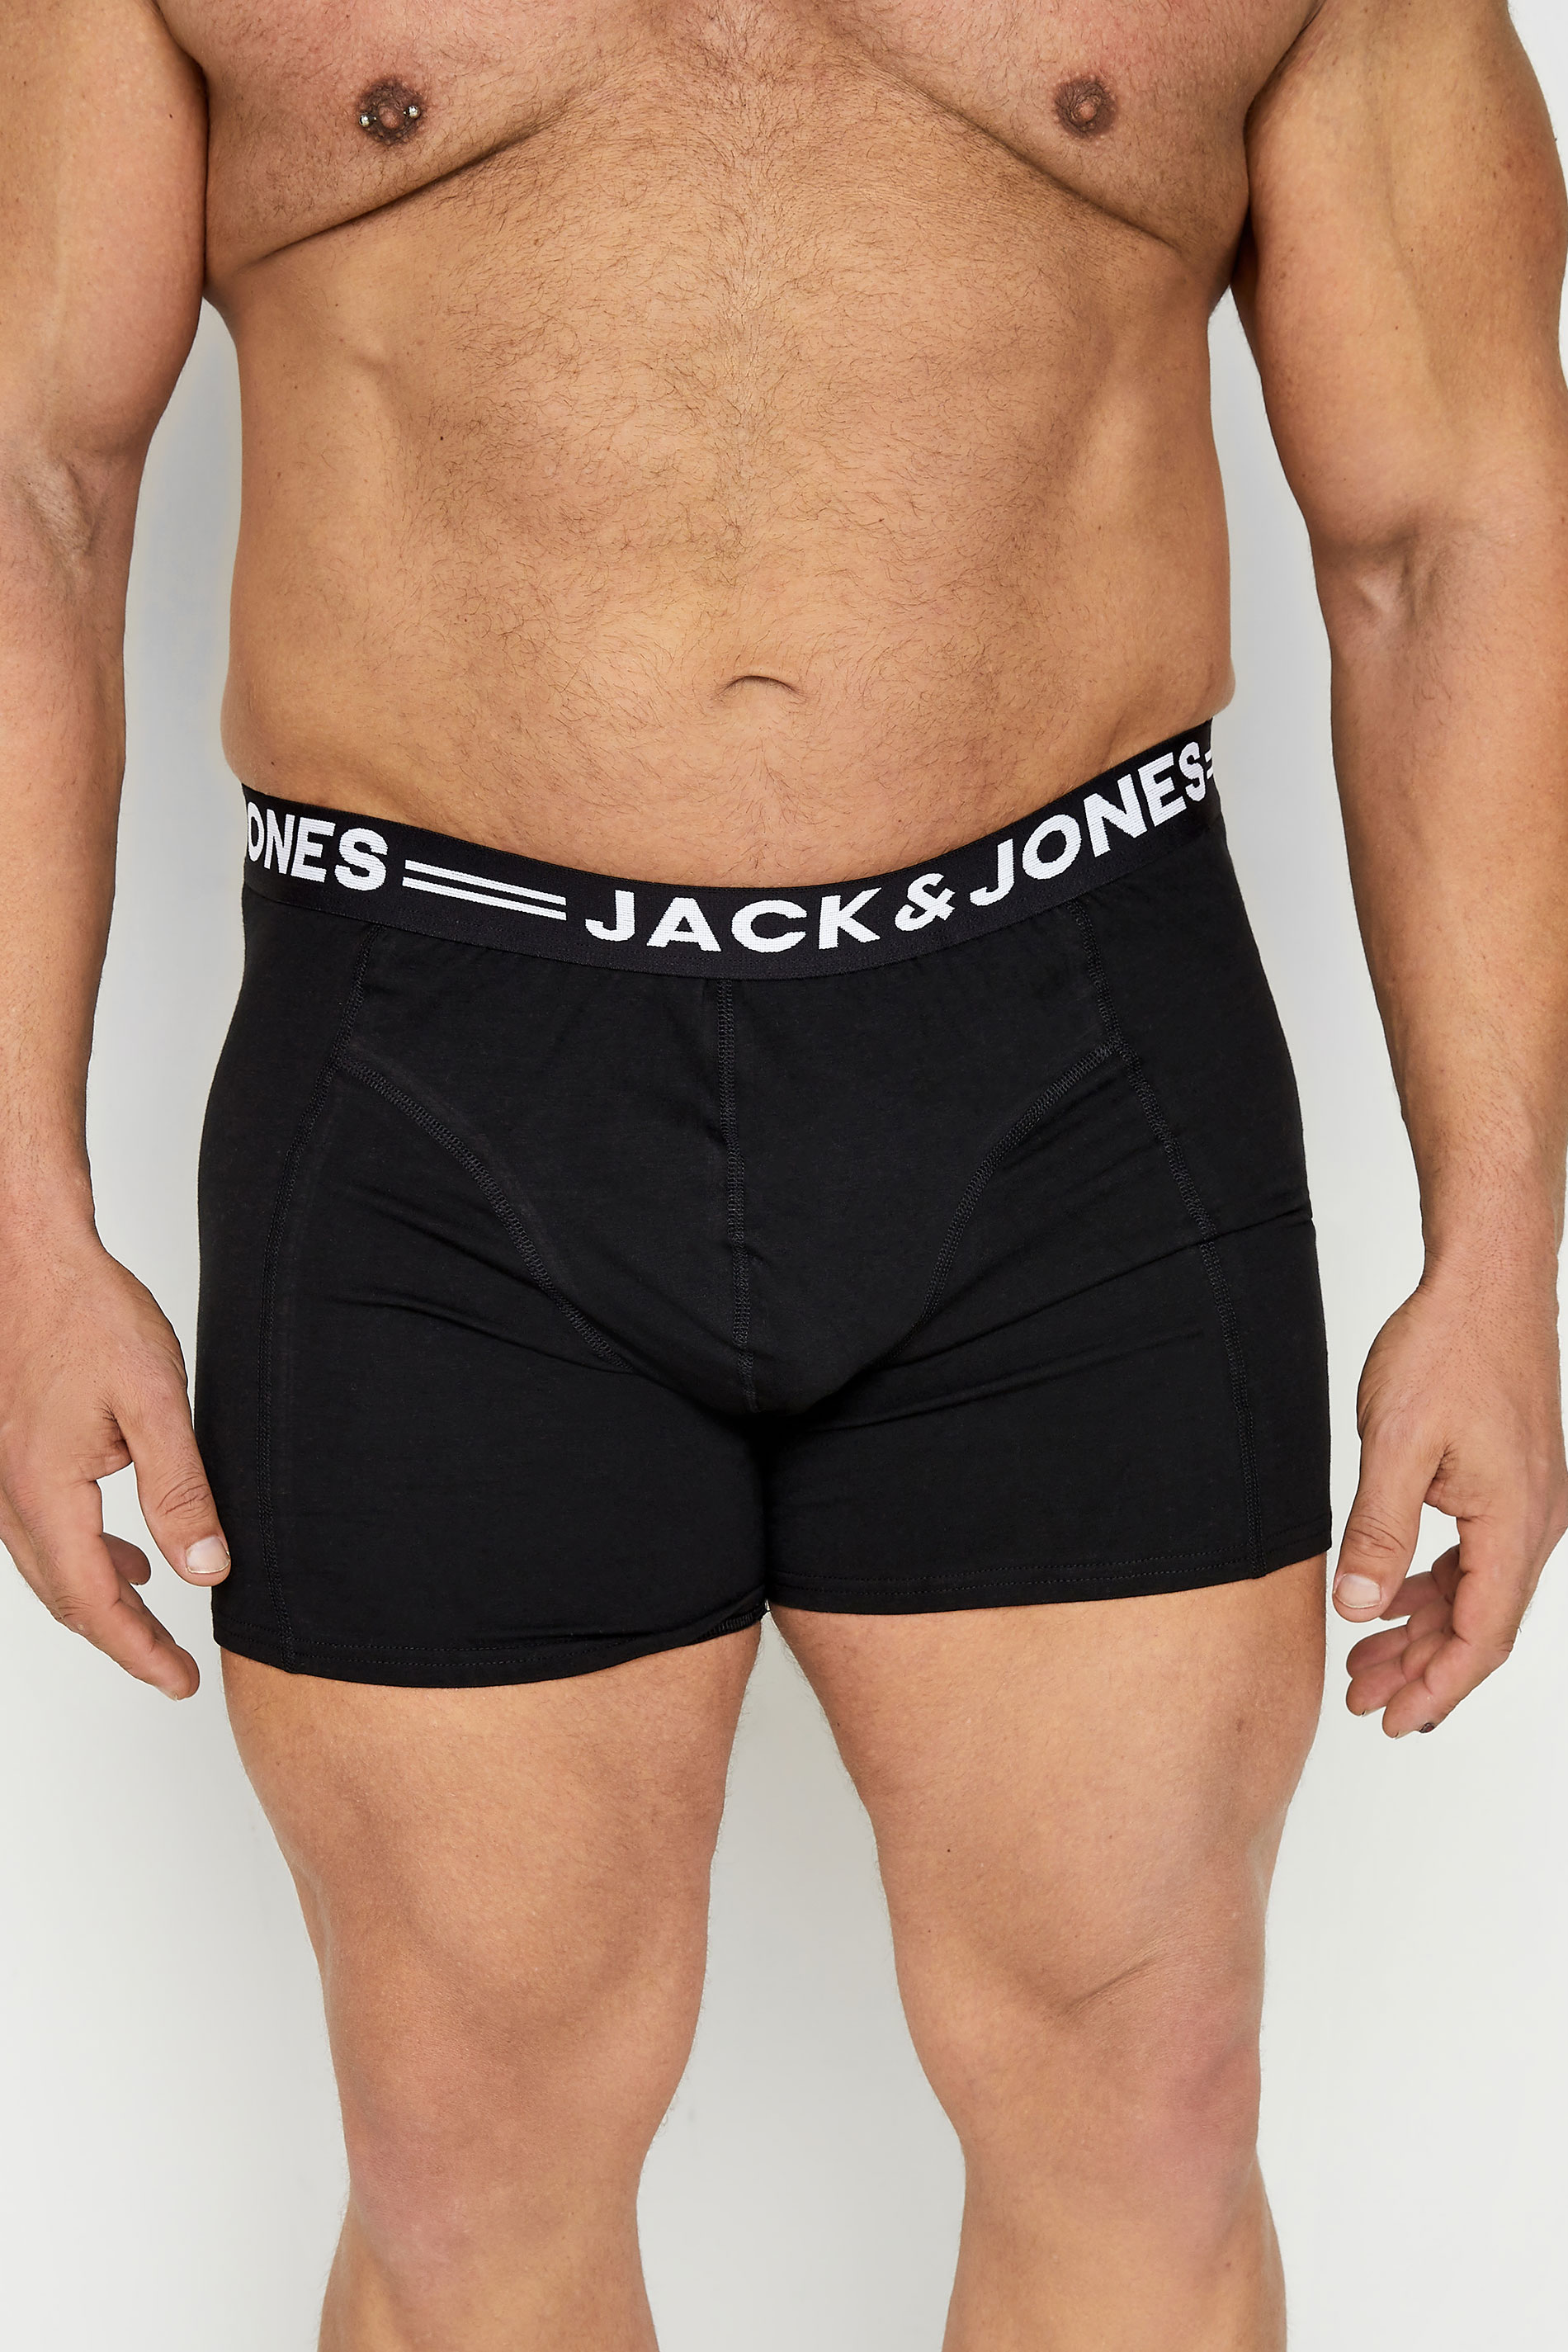 JACK & JONES Black 3 Pack Trunks 3